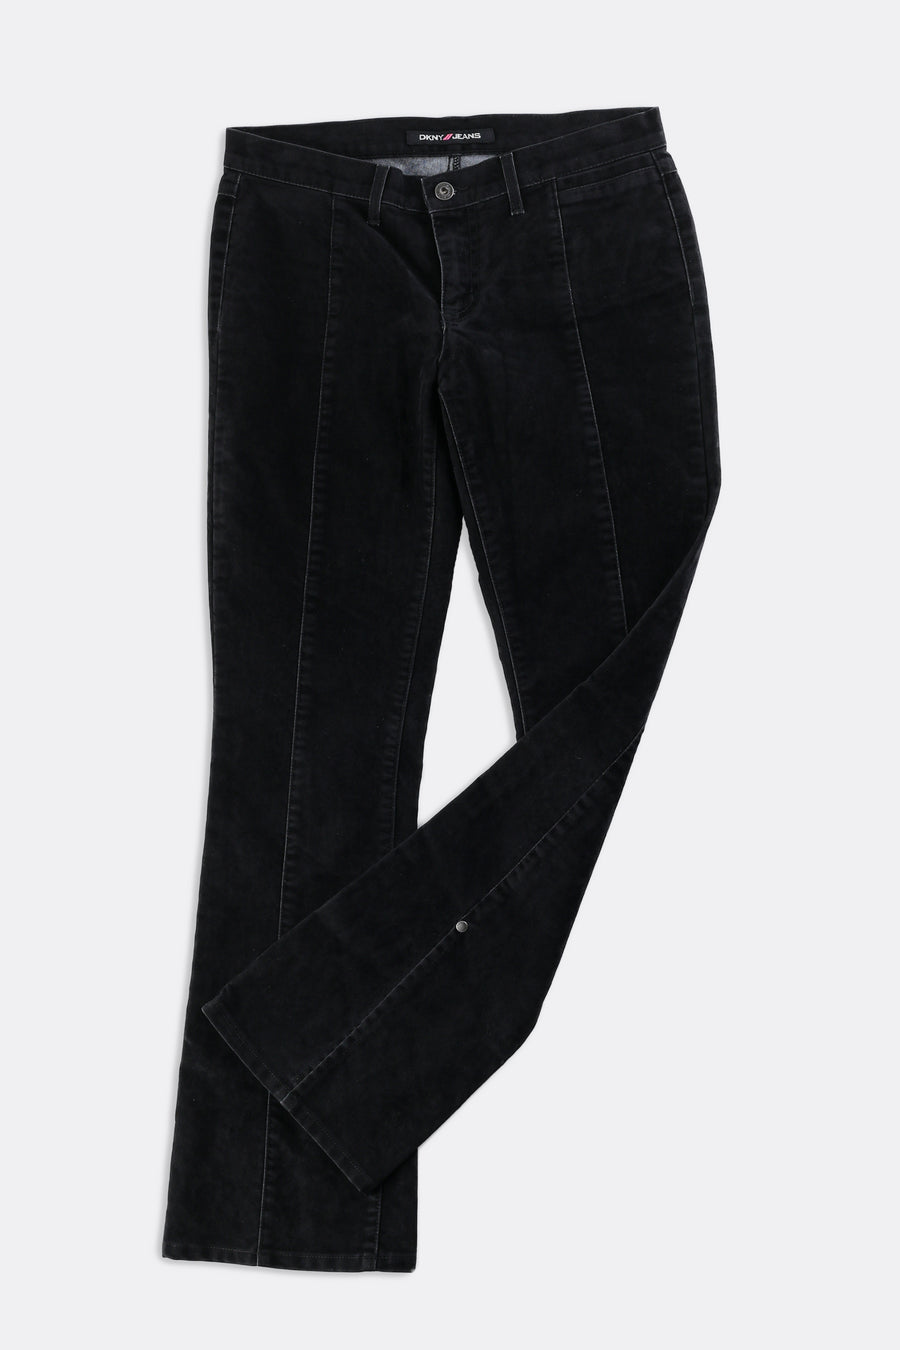 Vintage DKNY Suede Pants